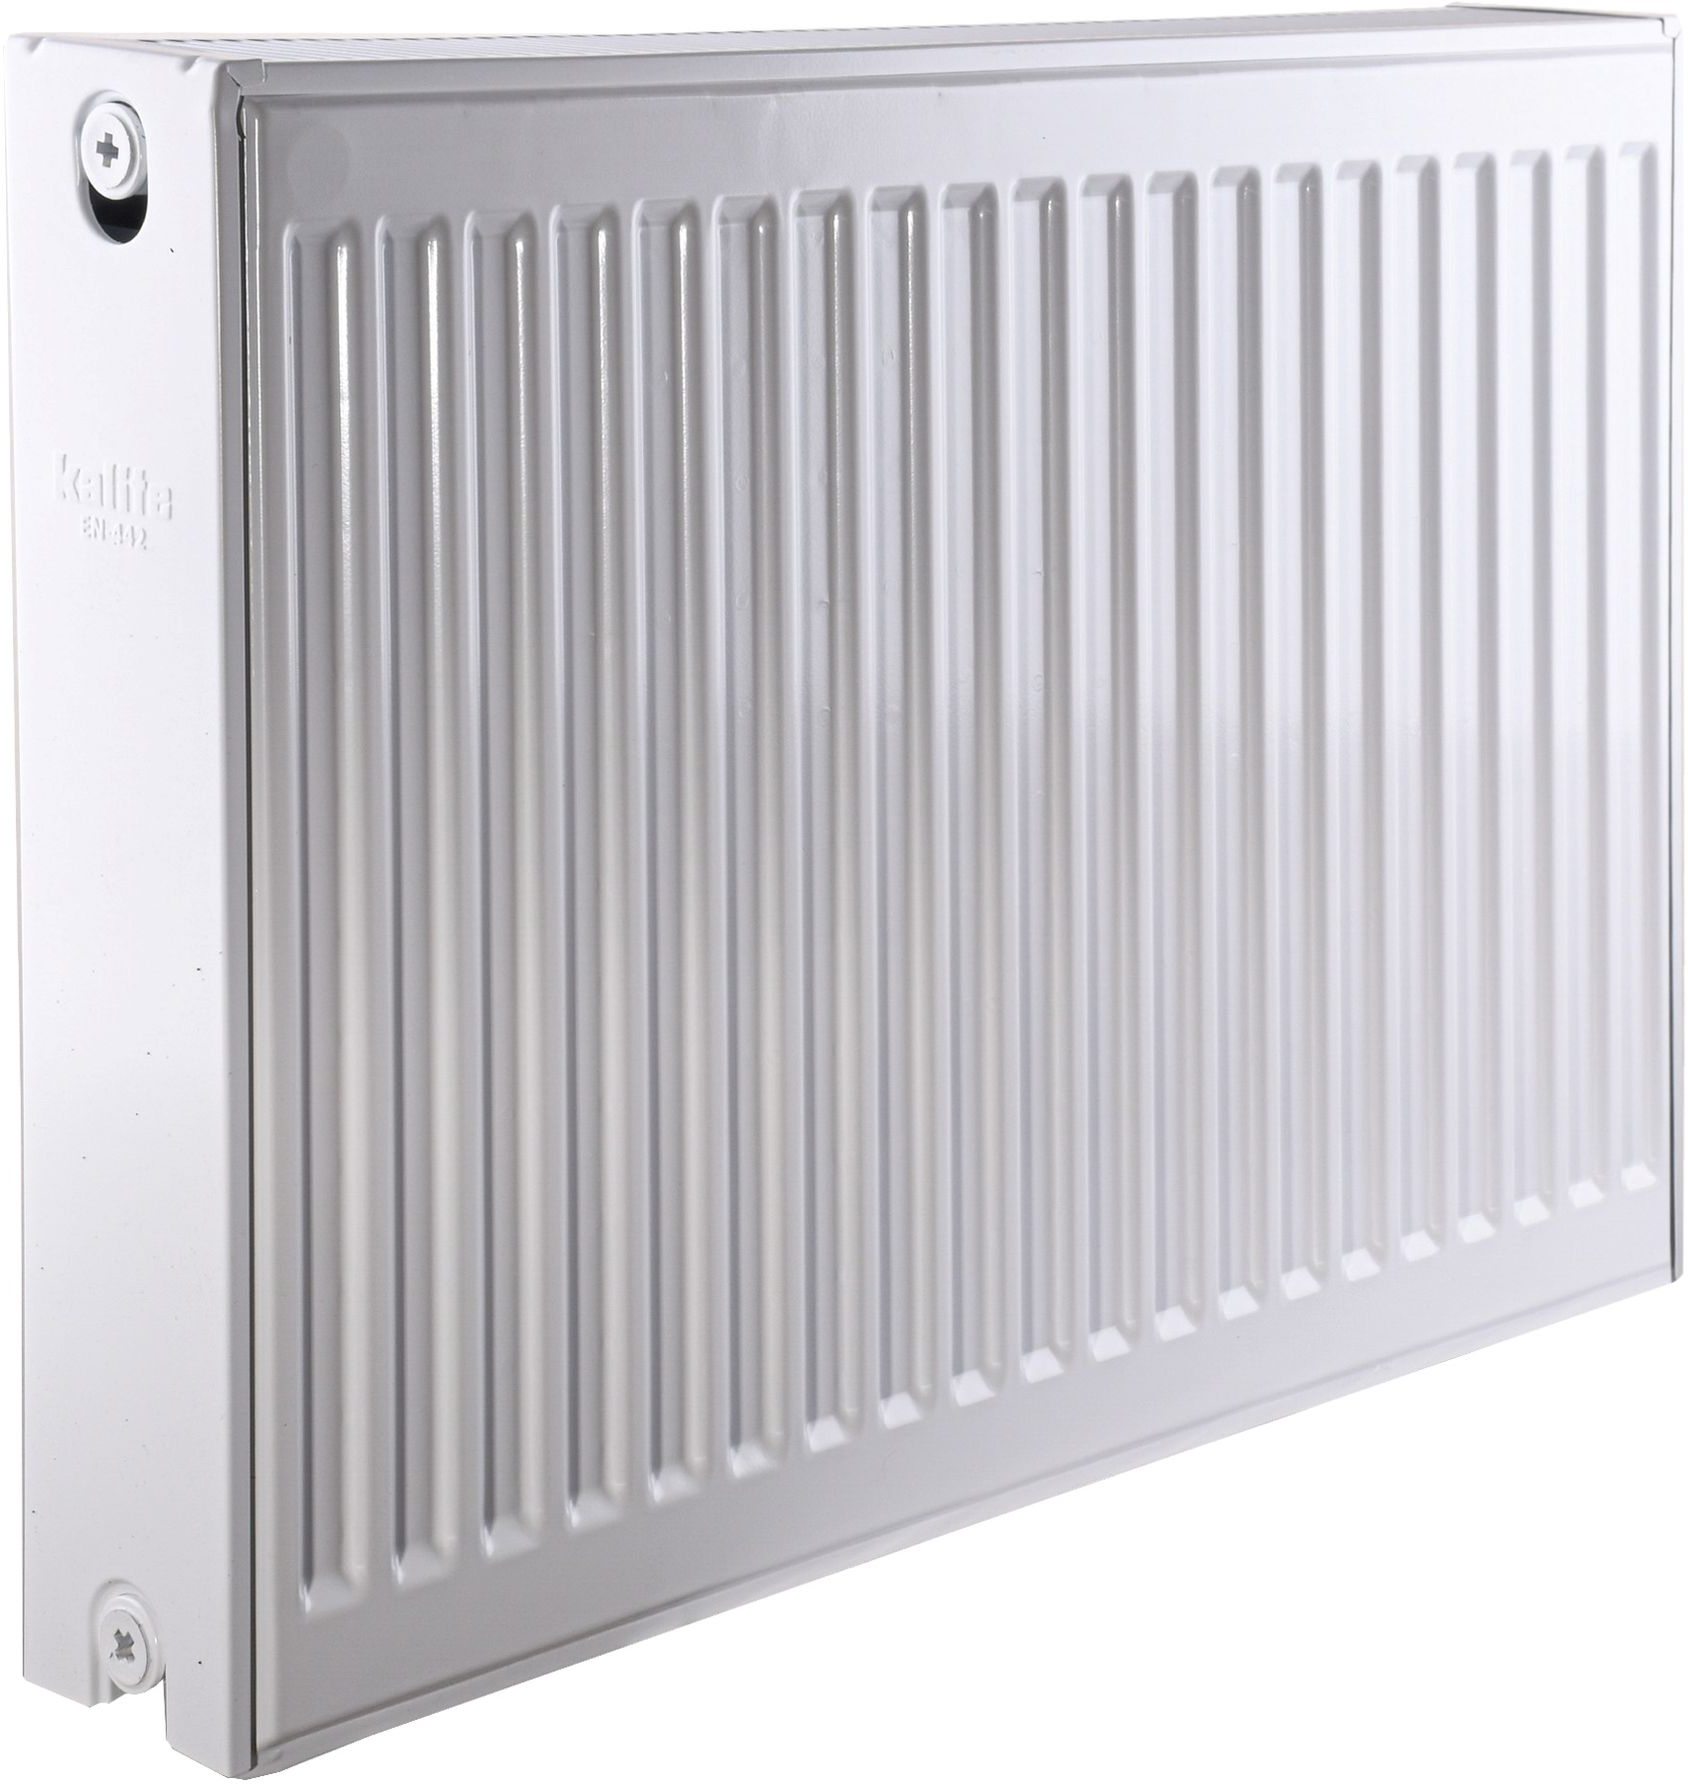 Радиатор для отопления Kalite 22 бок 500x700